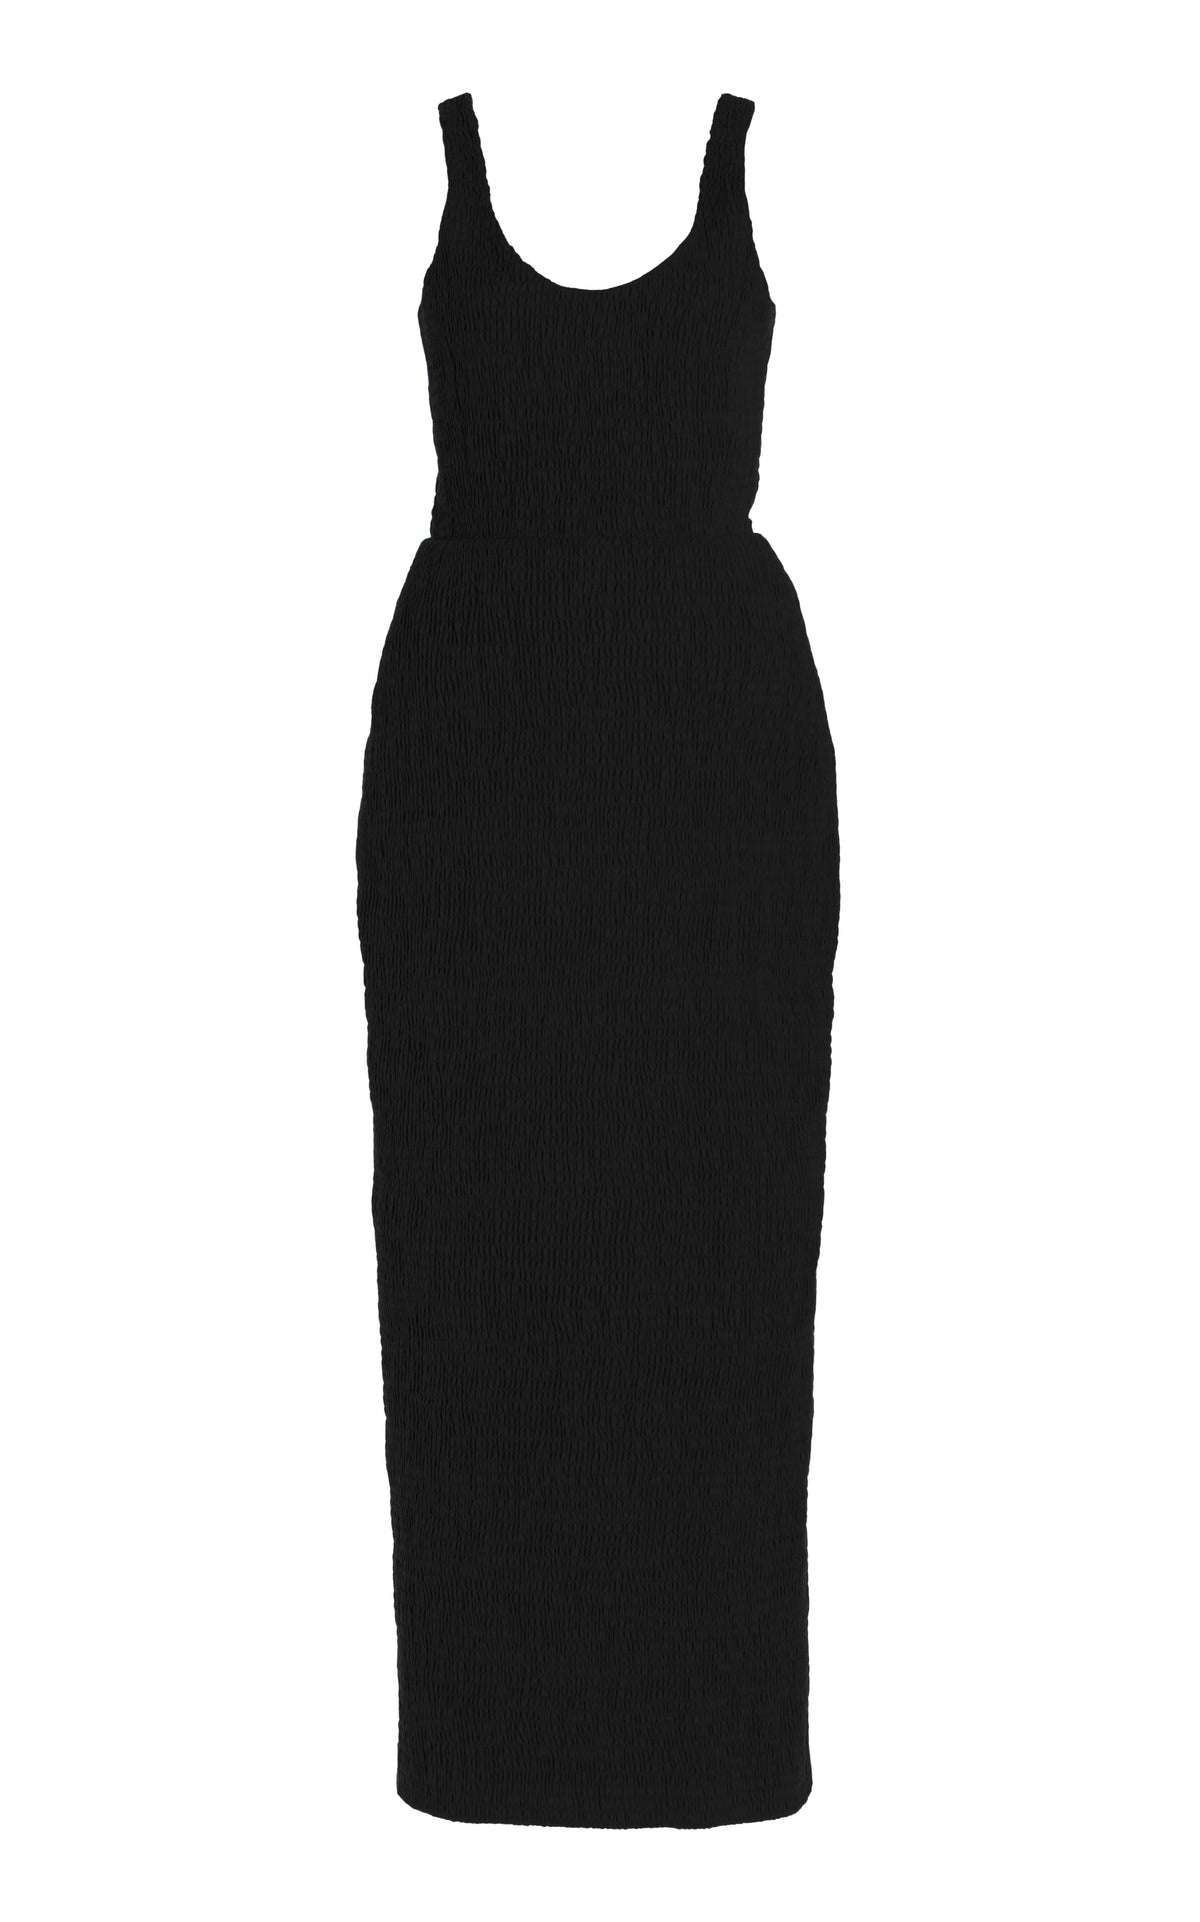 Girard Shirred Dress in Black Aloe Linen